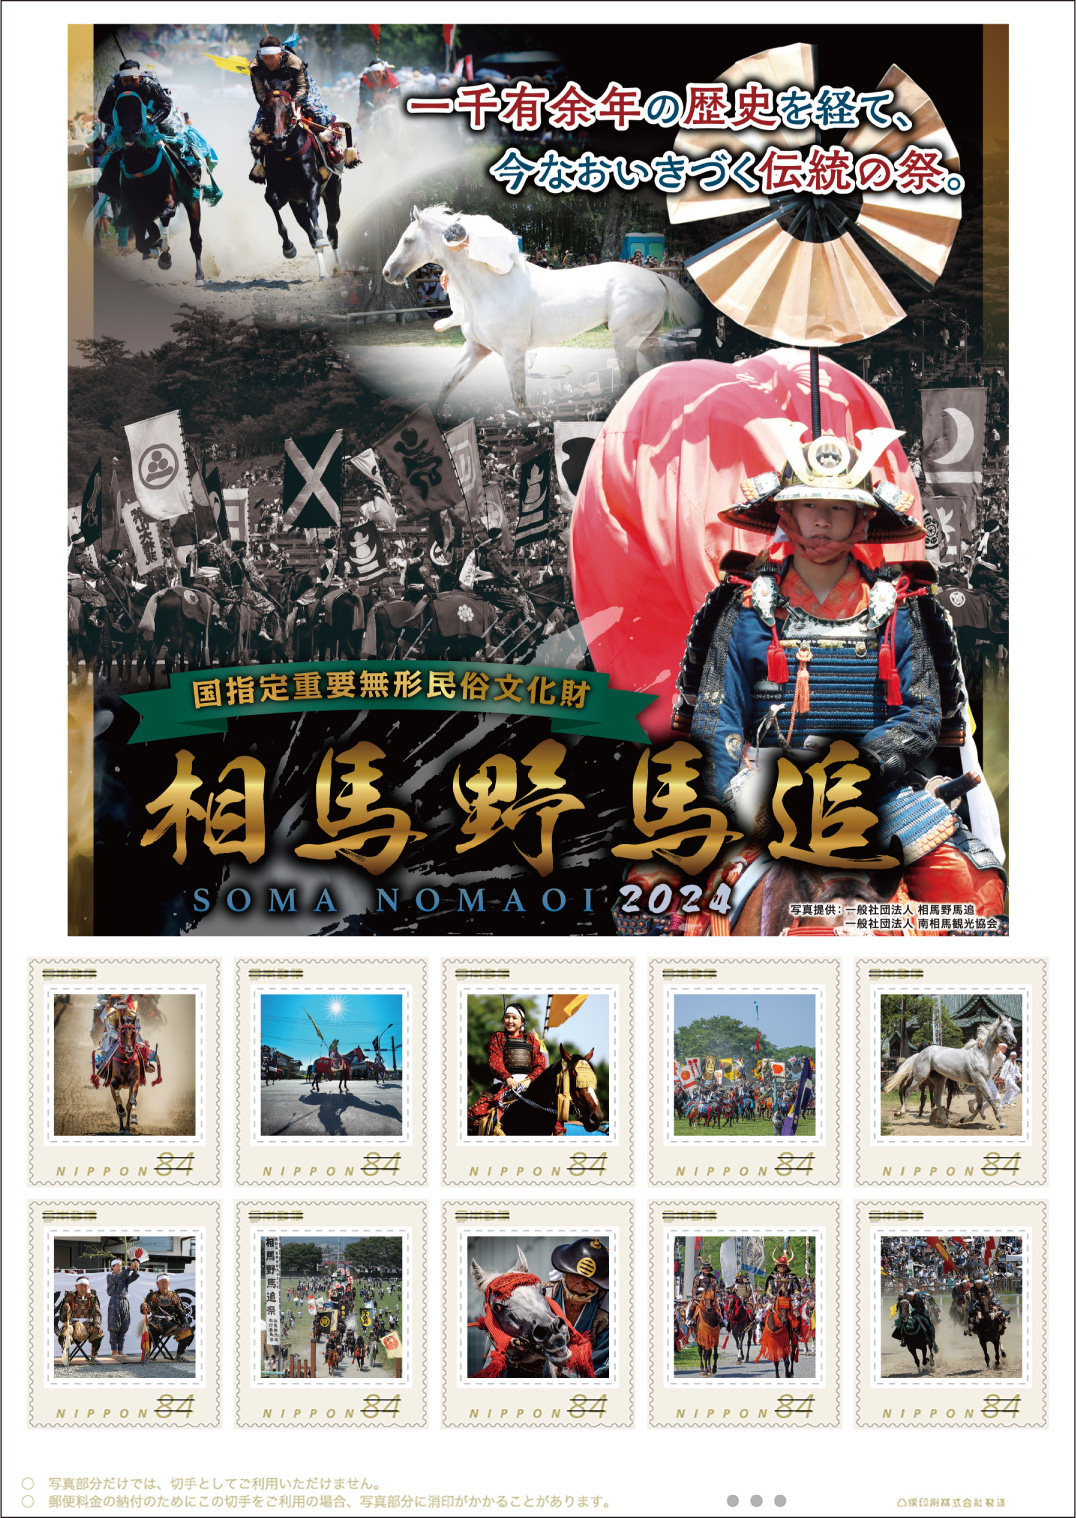 オリジナル フレーム切手「国指定重要無形民俗文化財 相馬野馬追 2024」の販売開始および贈呈式の開催